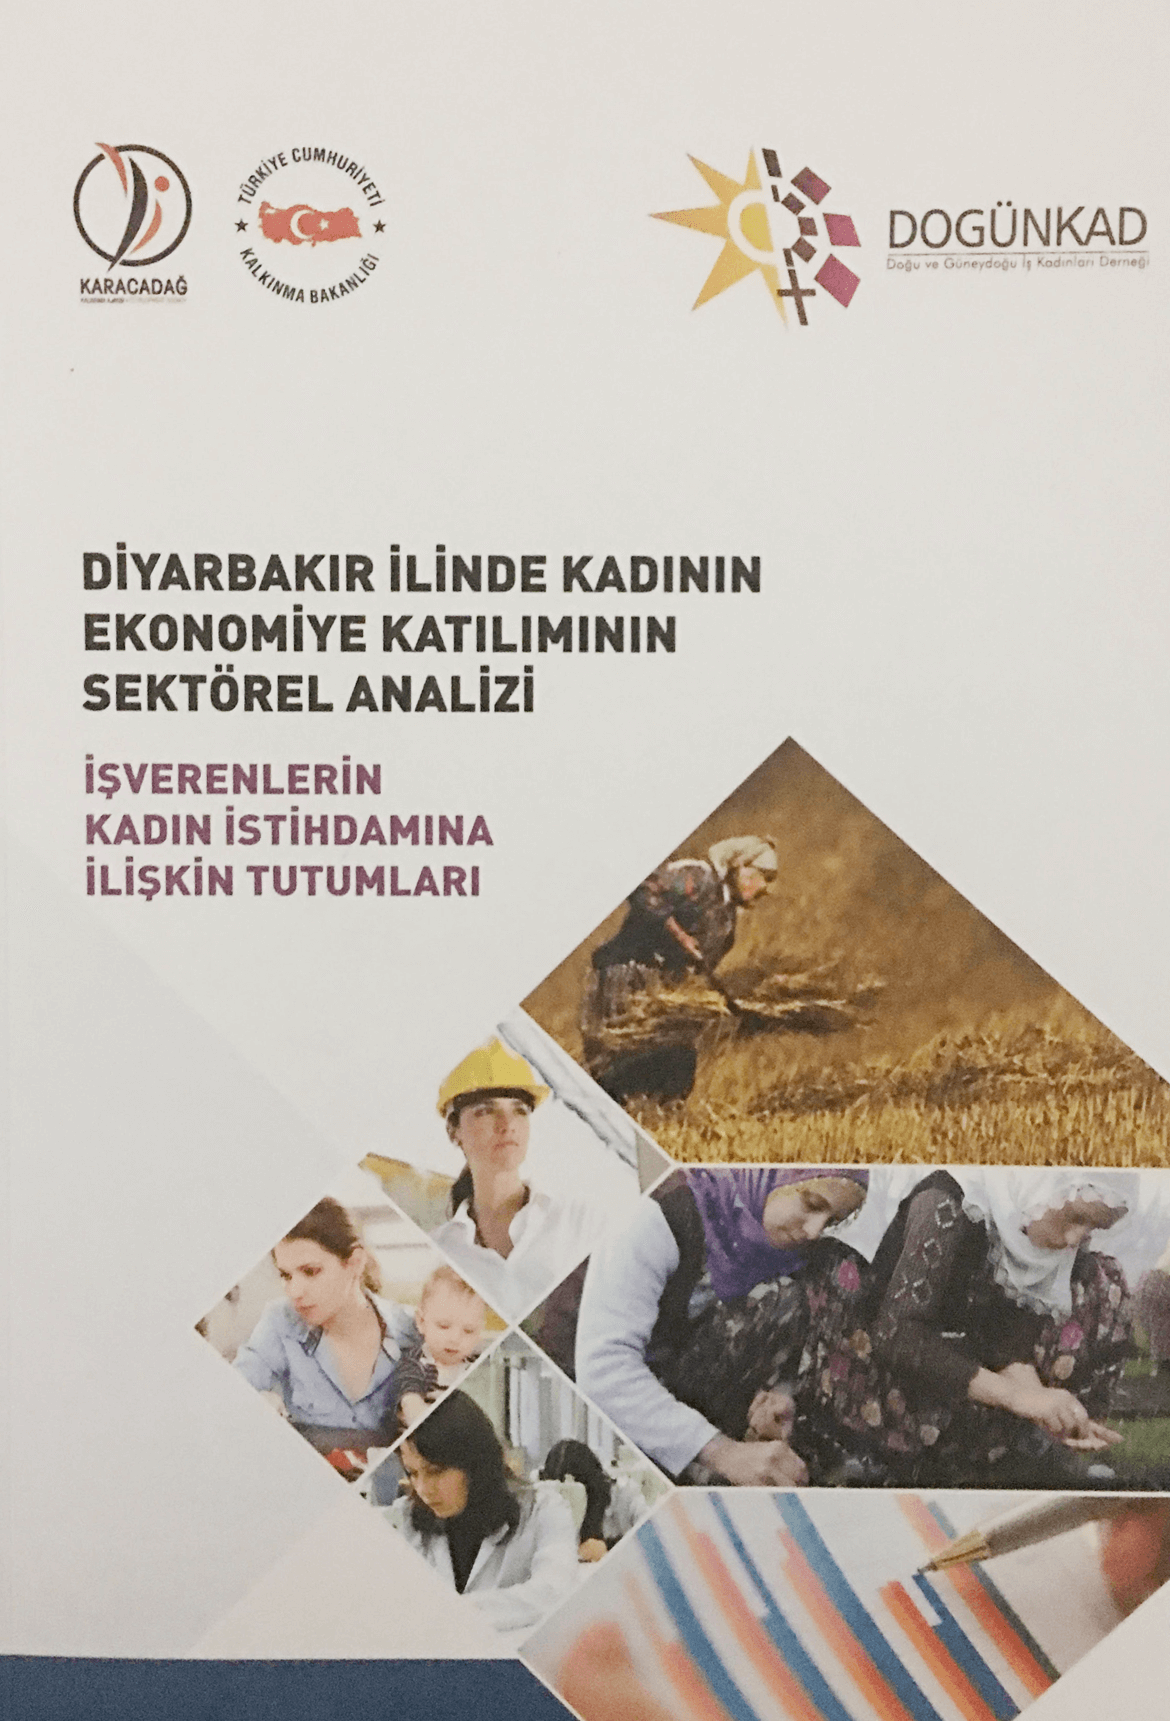 Diyarbakır ilinde kadının Ekonomiye Katılımının sektörel analizi